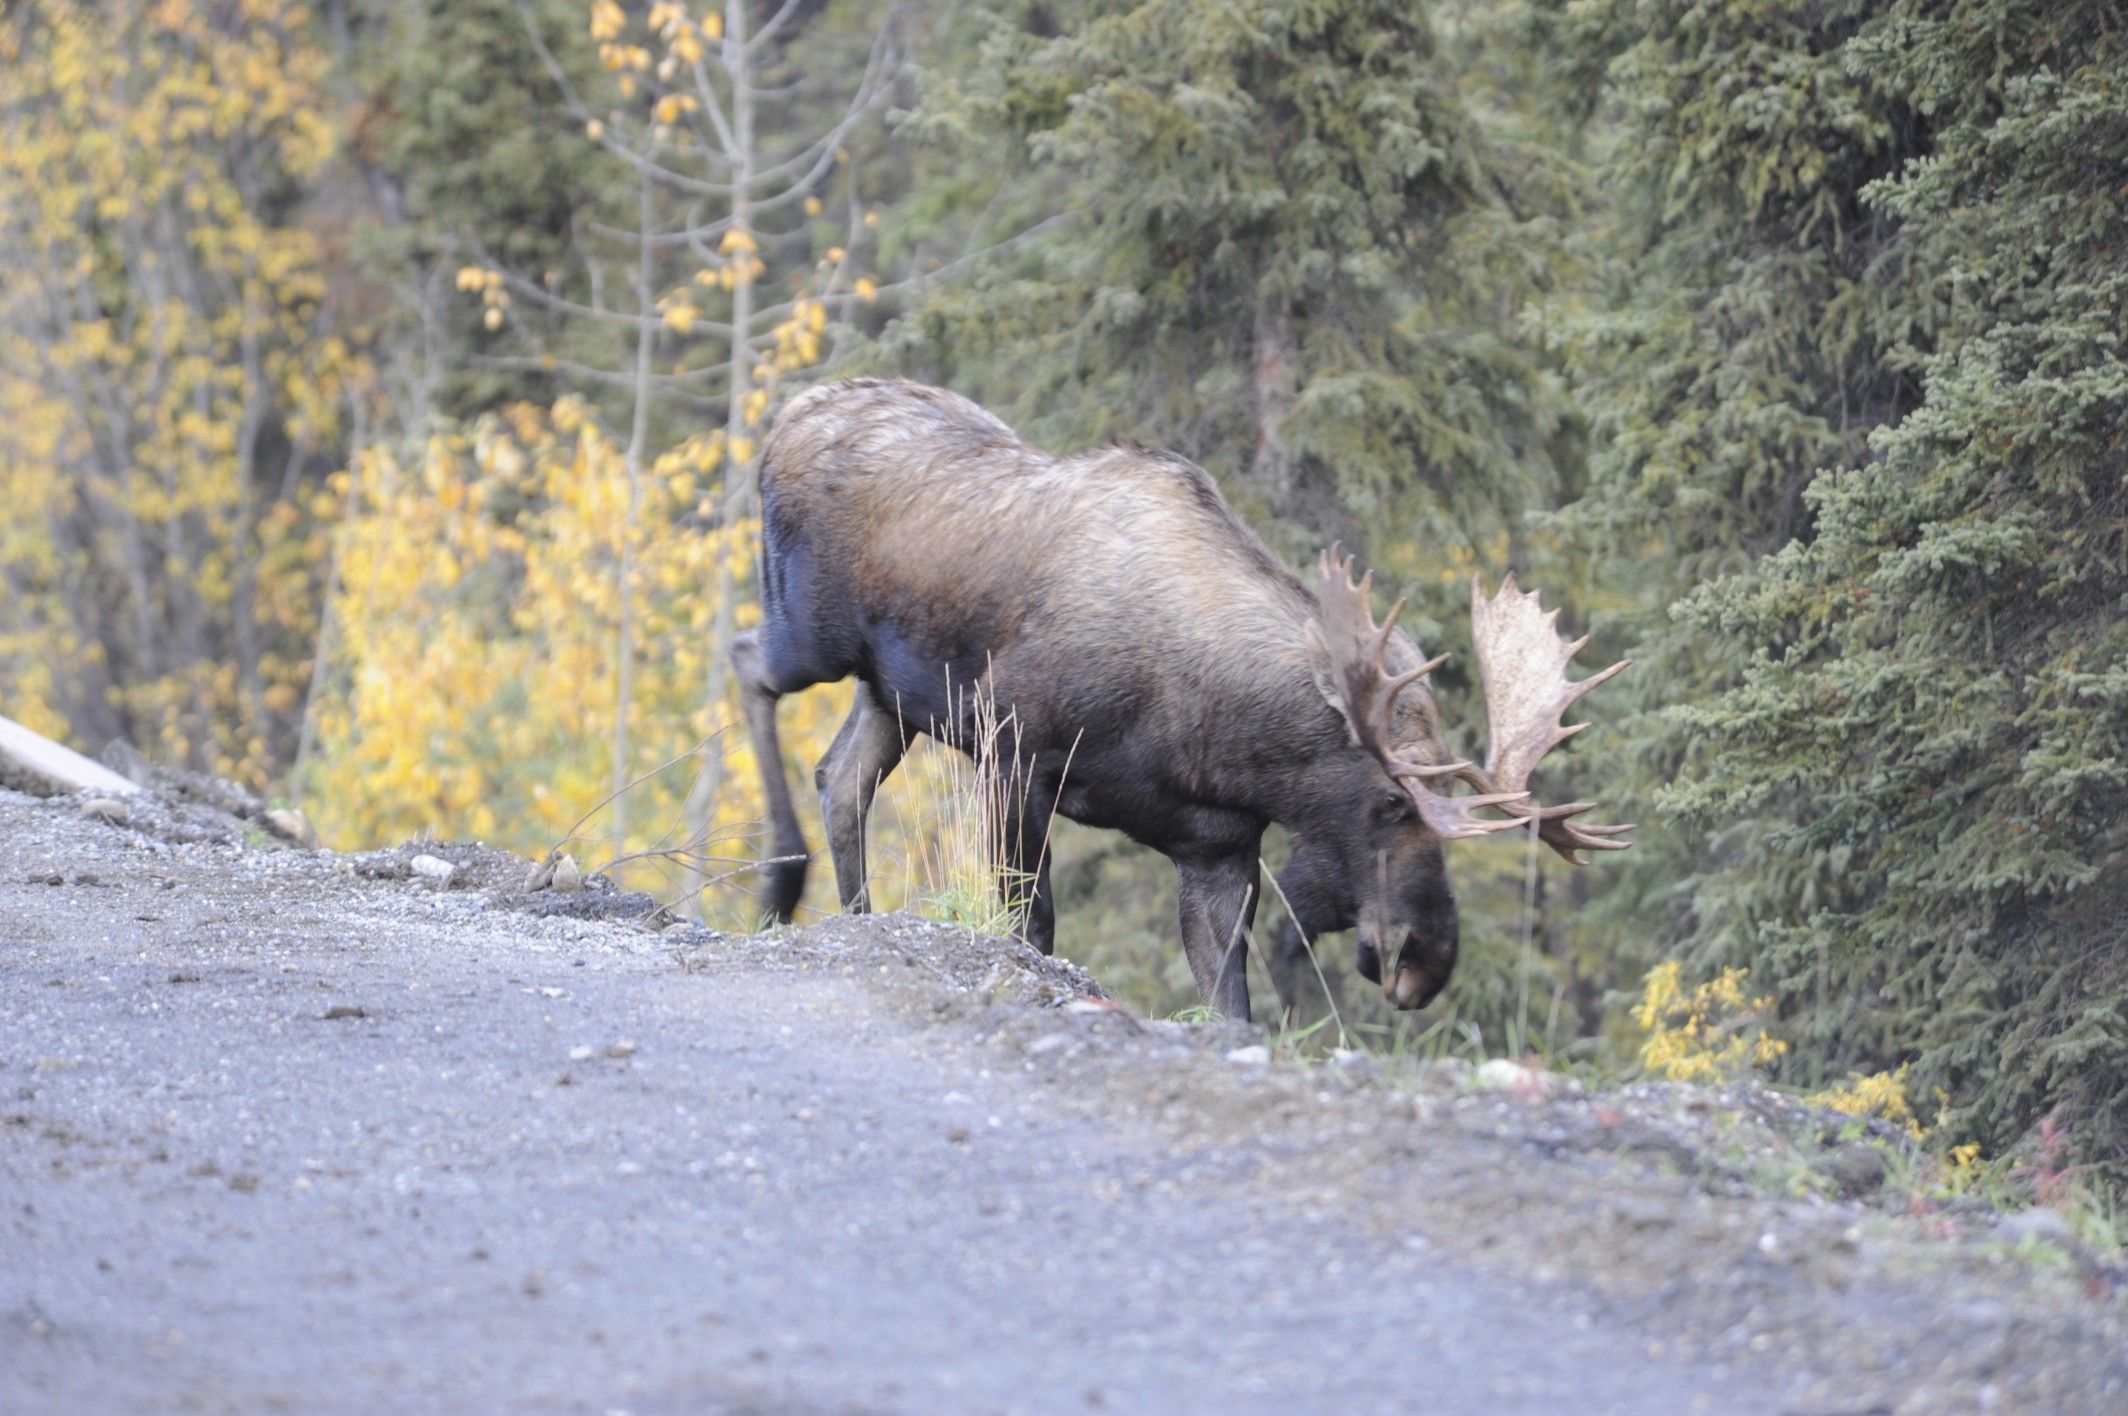 Image of North American Elk